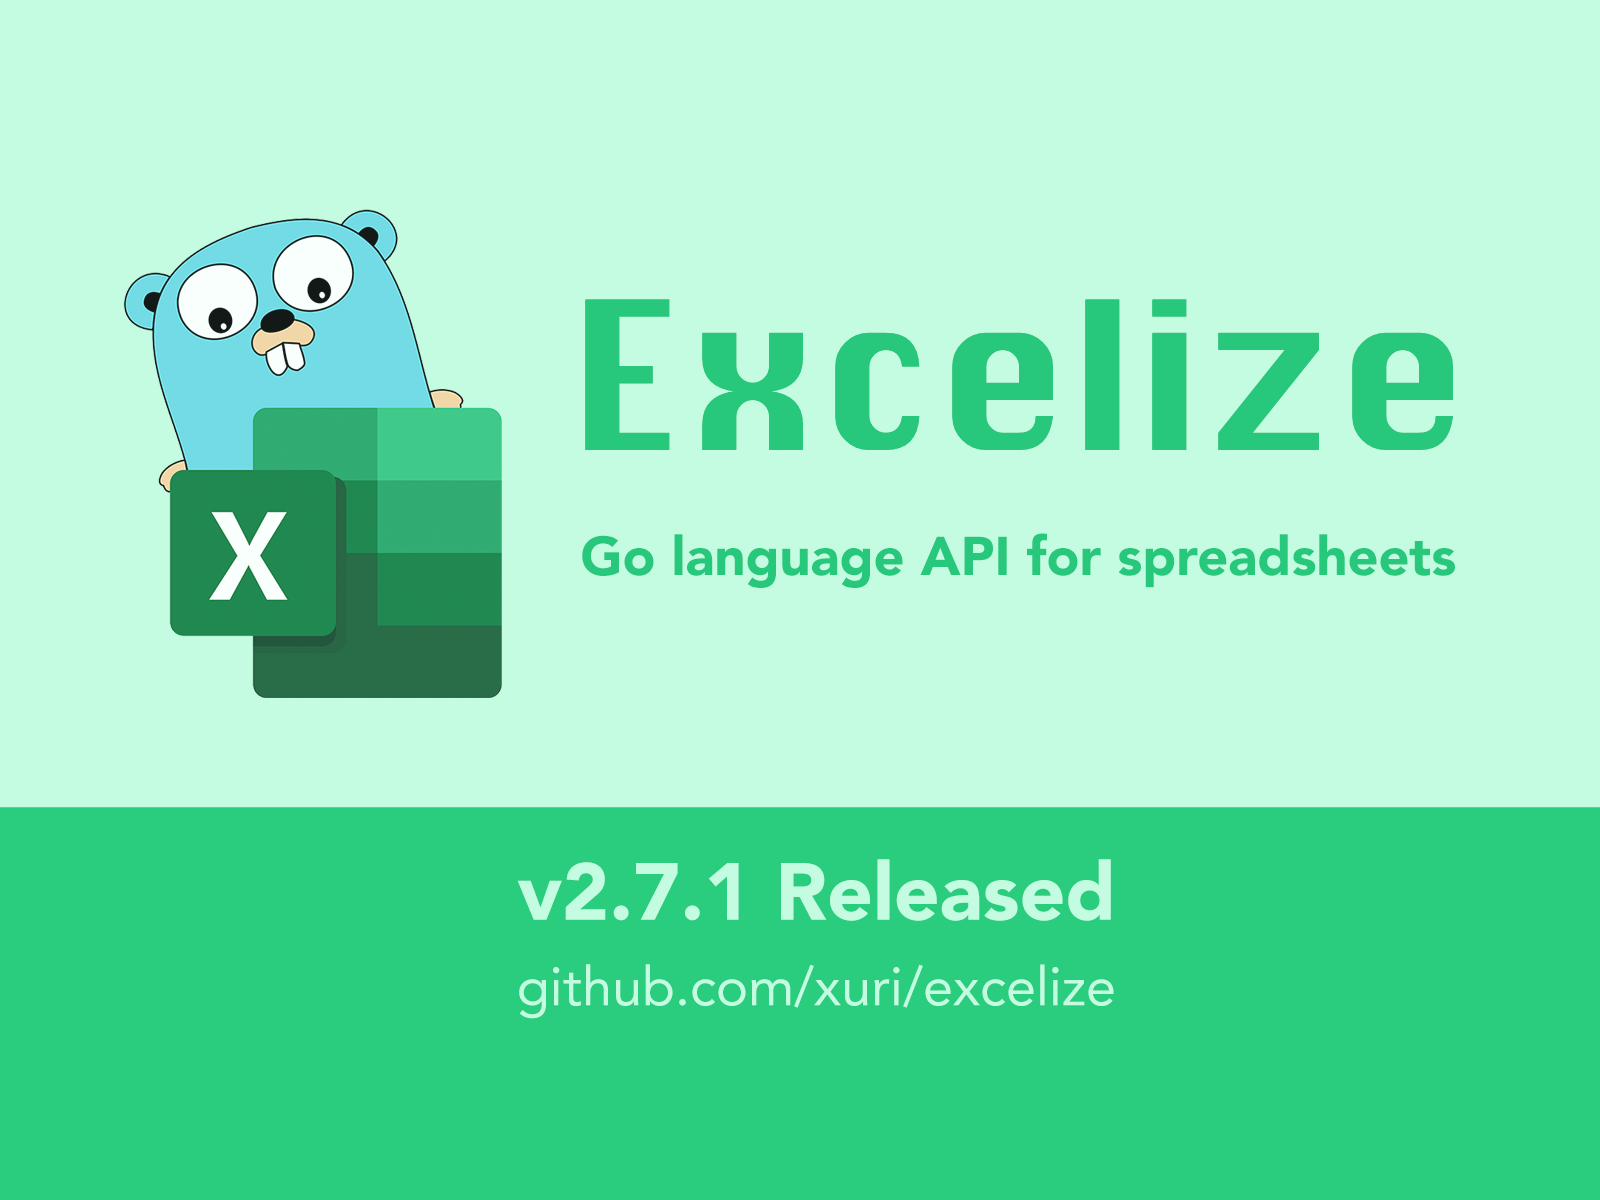 Excelize 发布 2.7.1 版本